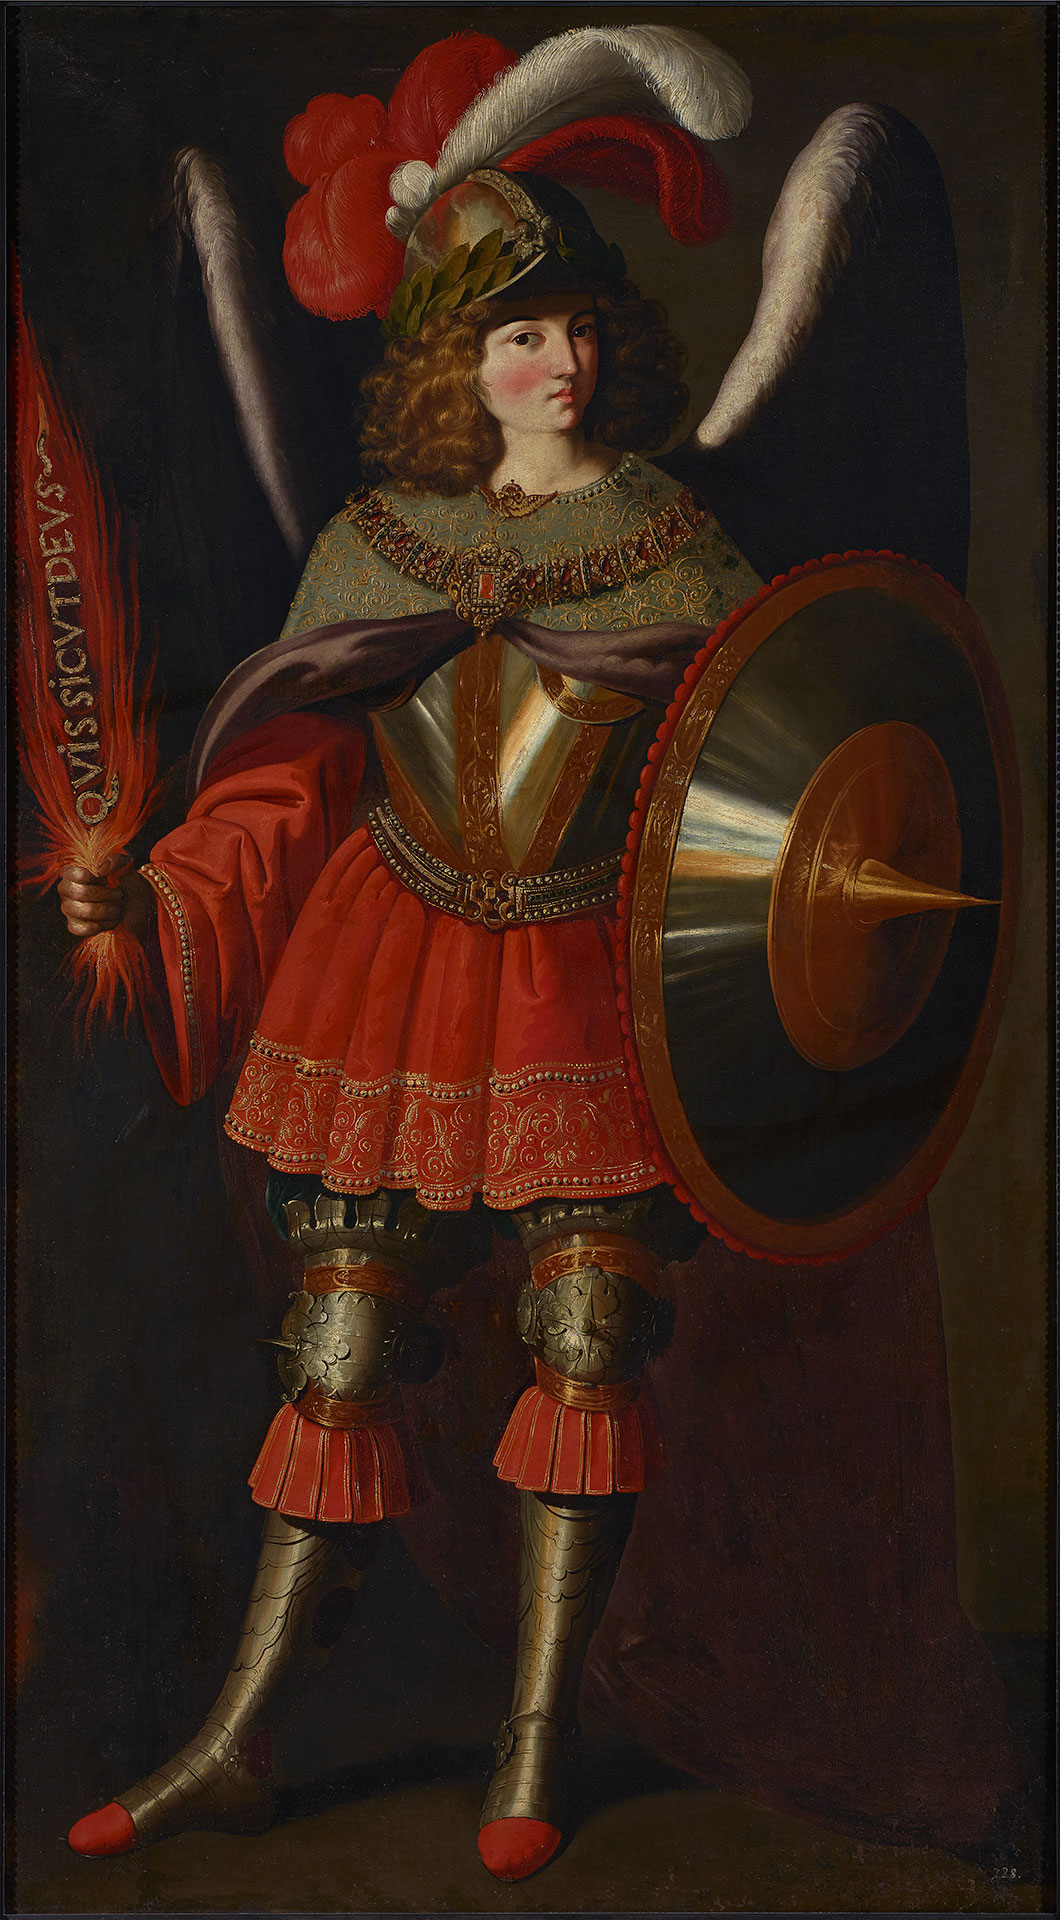 The Archangel Michael by Francisco de Zurbarán - 1645–1650 - 126 x 224 cm Fundación Banco Santander